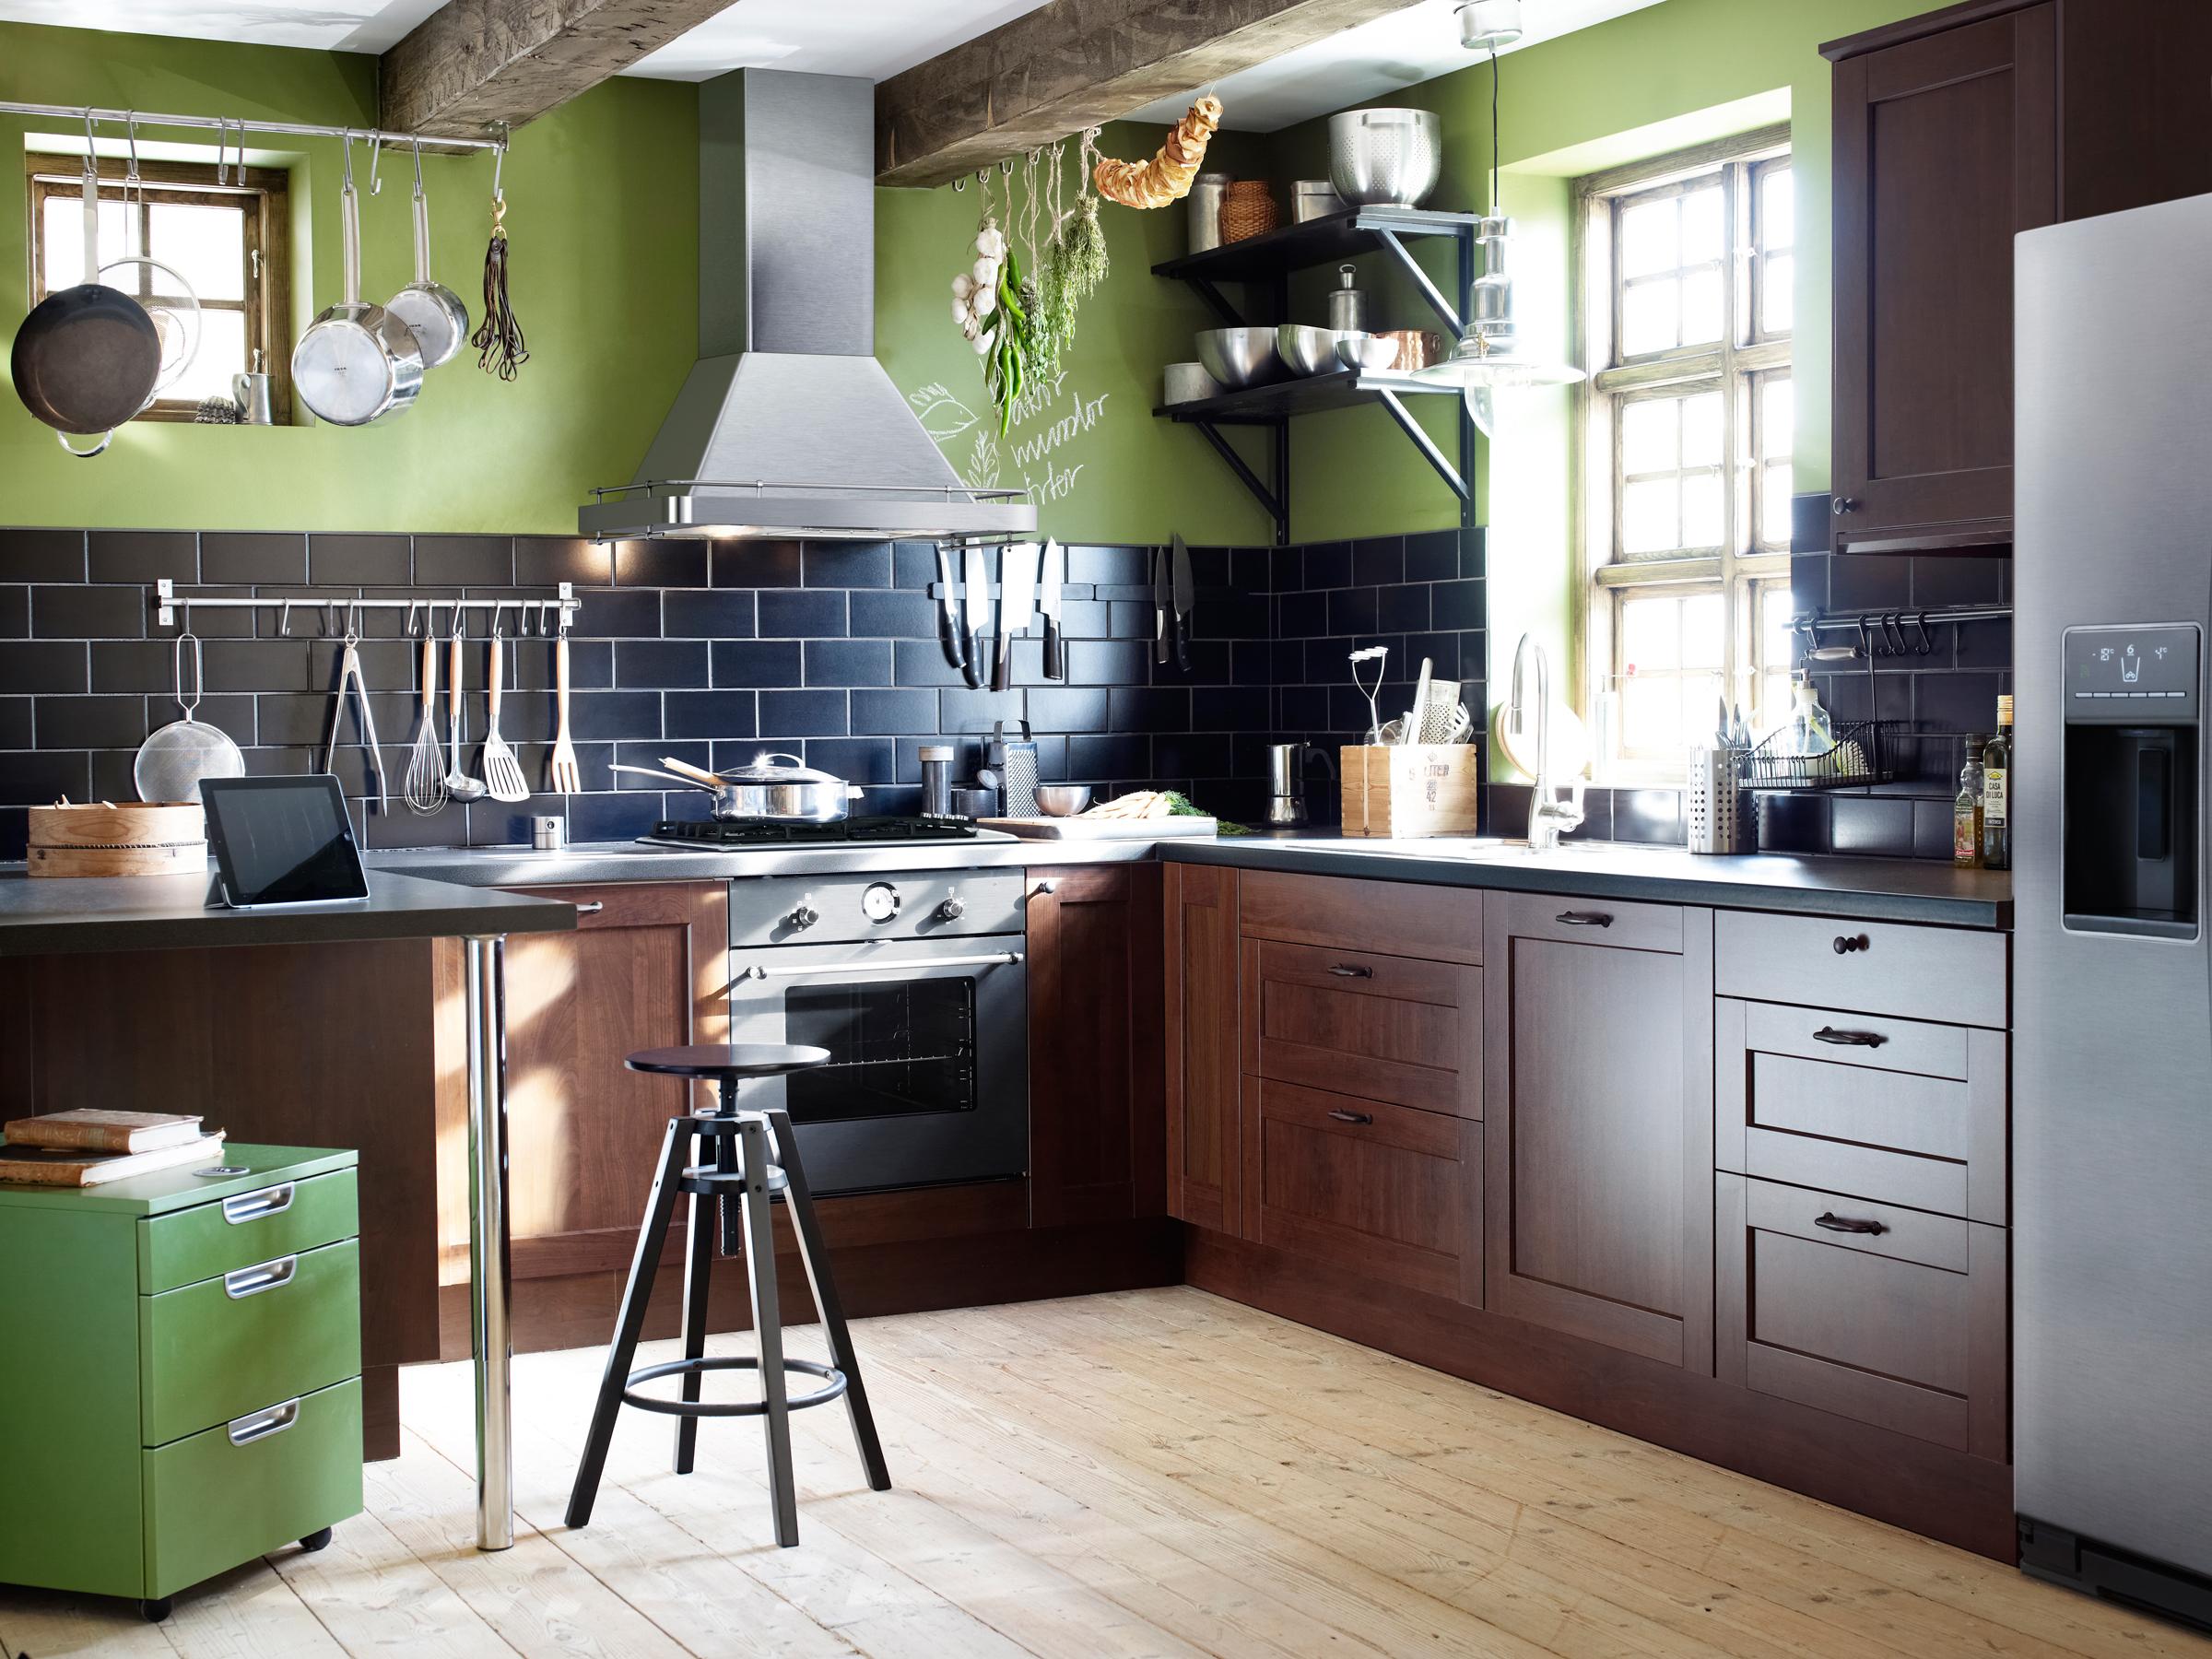 Einbauküche mit dunklem Holzfurnier in grün gestrichener Wohnküche #barhocker #ikea ©Inter IKEA Systems B.V